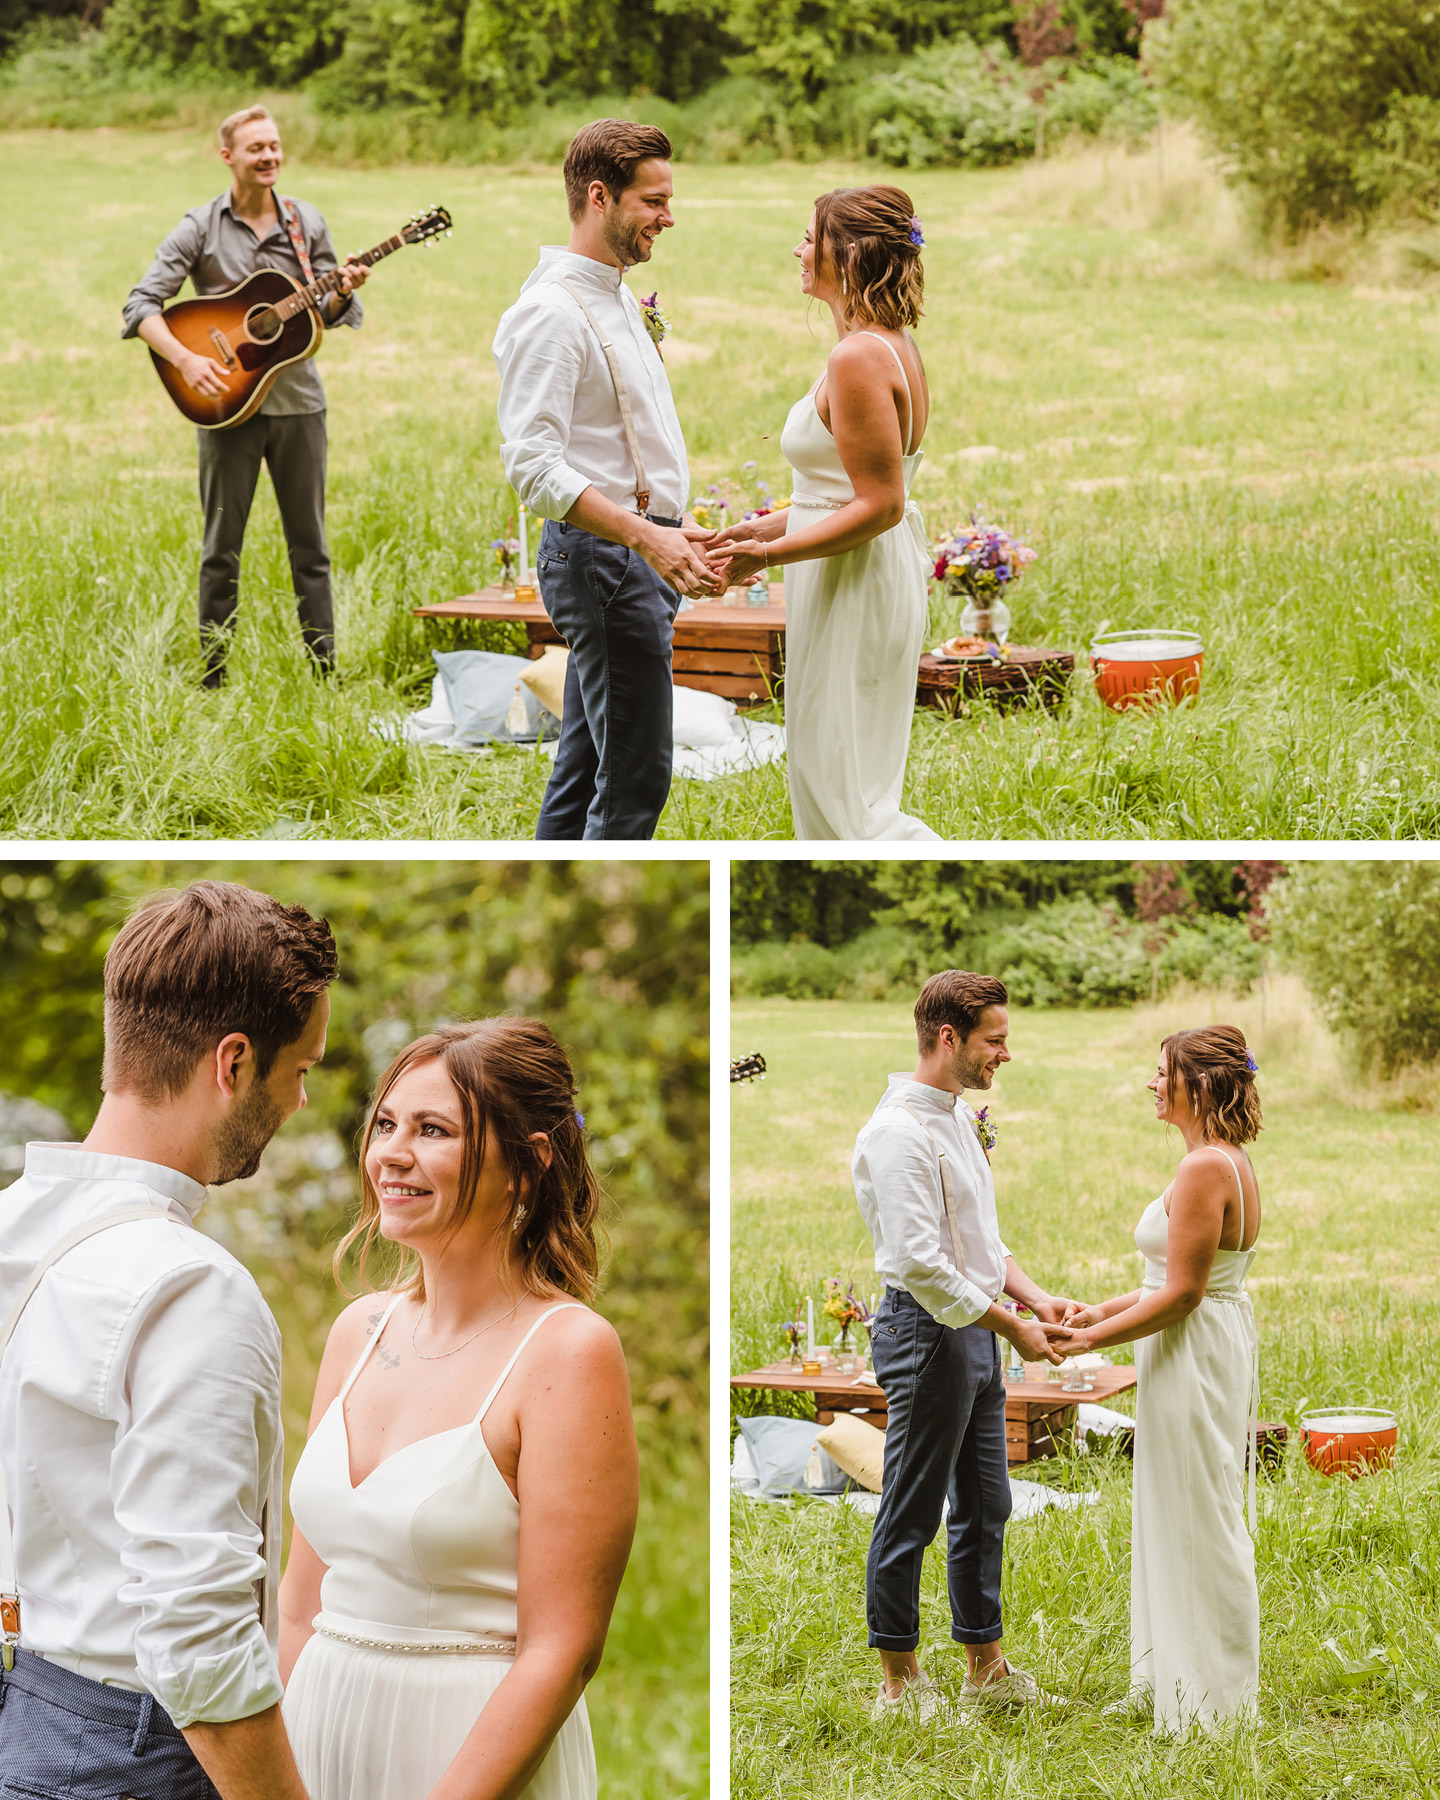 Brautpaar hält sich an den Händen und steht auf einer Wiese. Im Hintergrund spielt ein Mann Gitarre und ein Picknick ist aufgebaut.